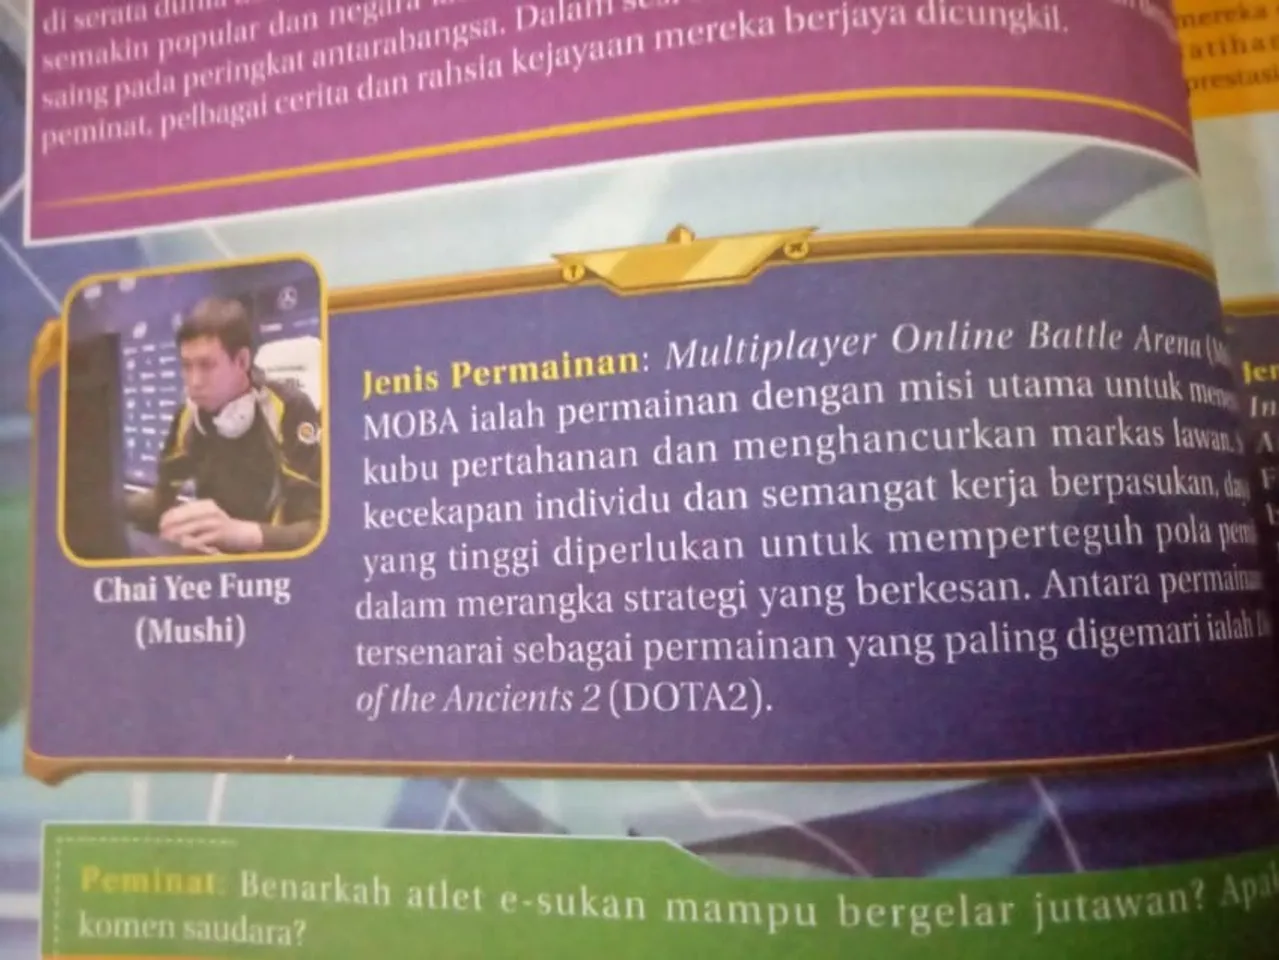 Mushi in Malaysian Textbook